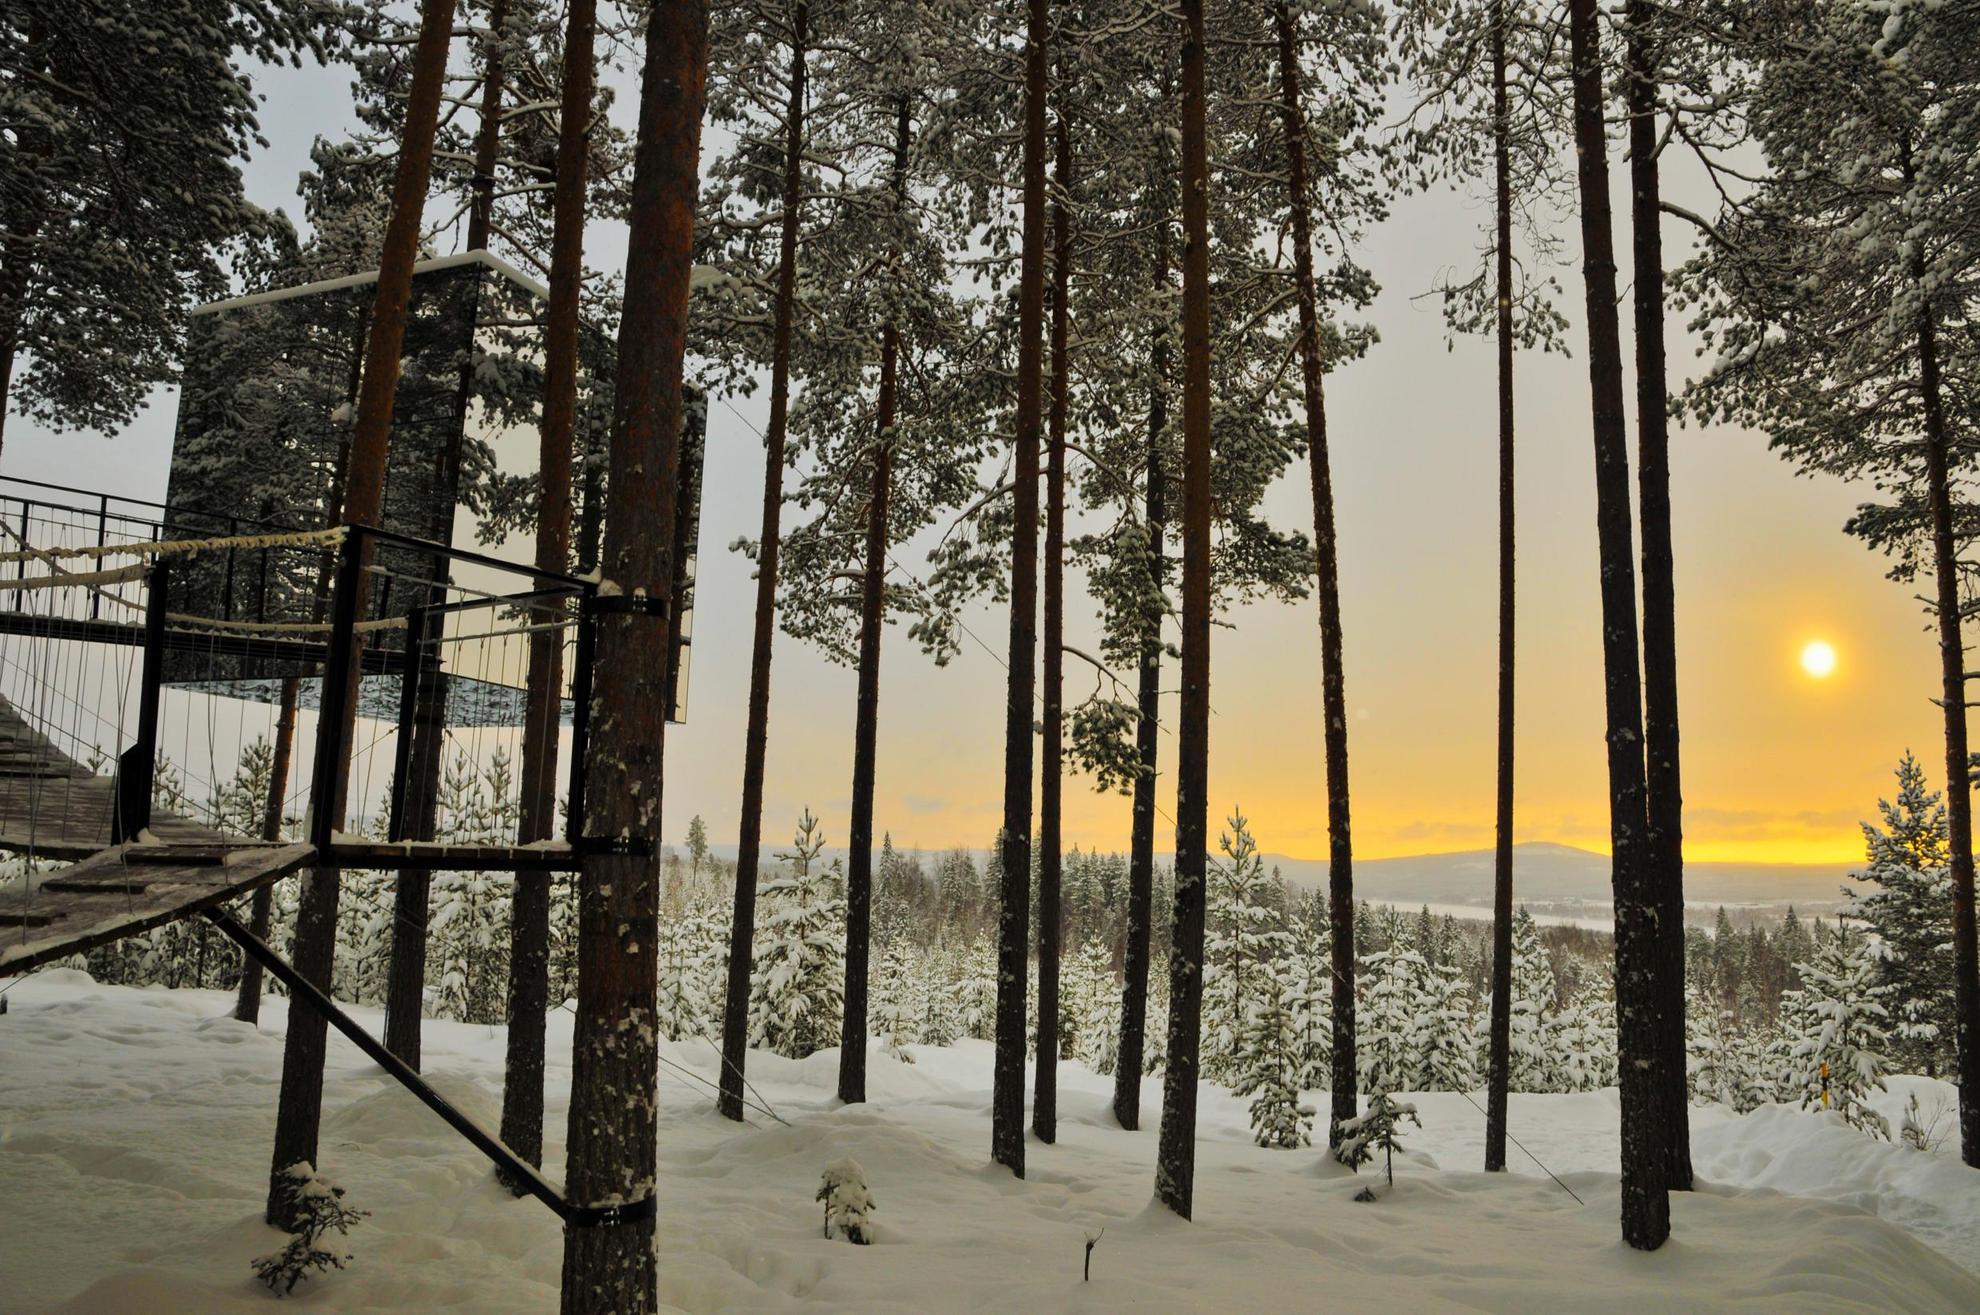 Le Treehotel est un hôtel dans les arbres tout en verre miroir, situé dans une forêt enneigée en Laponie suédoise.